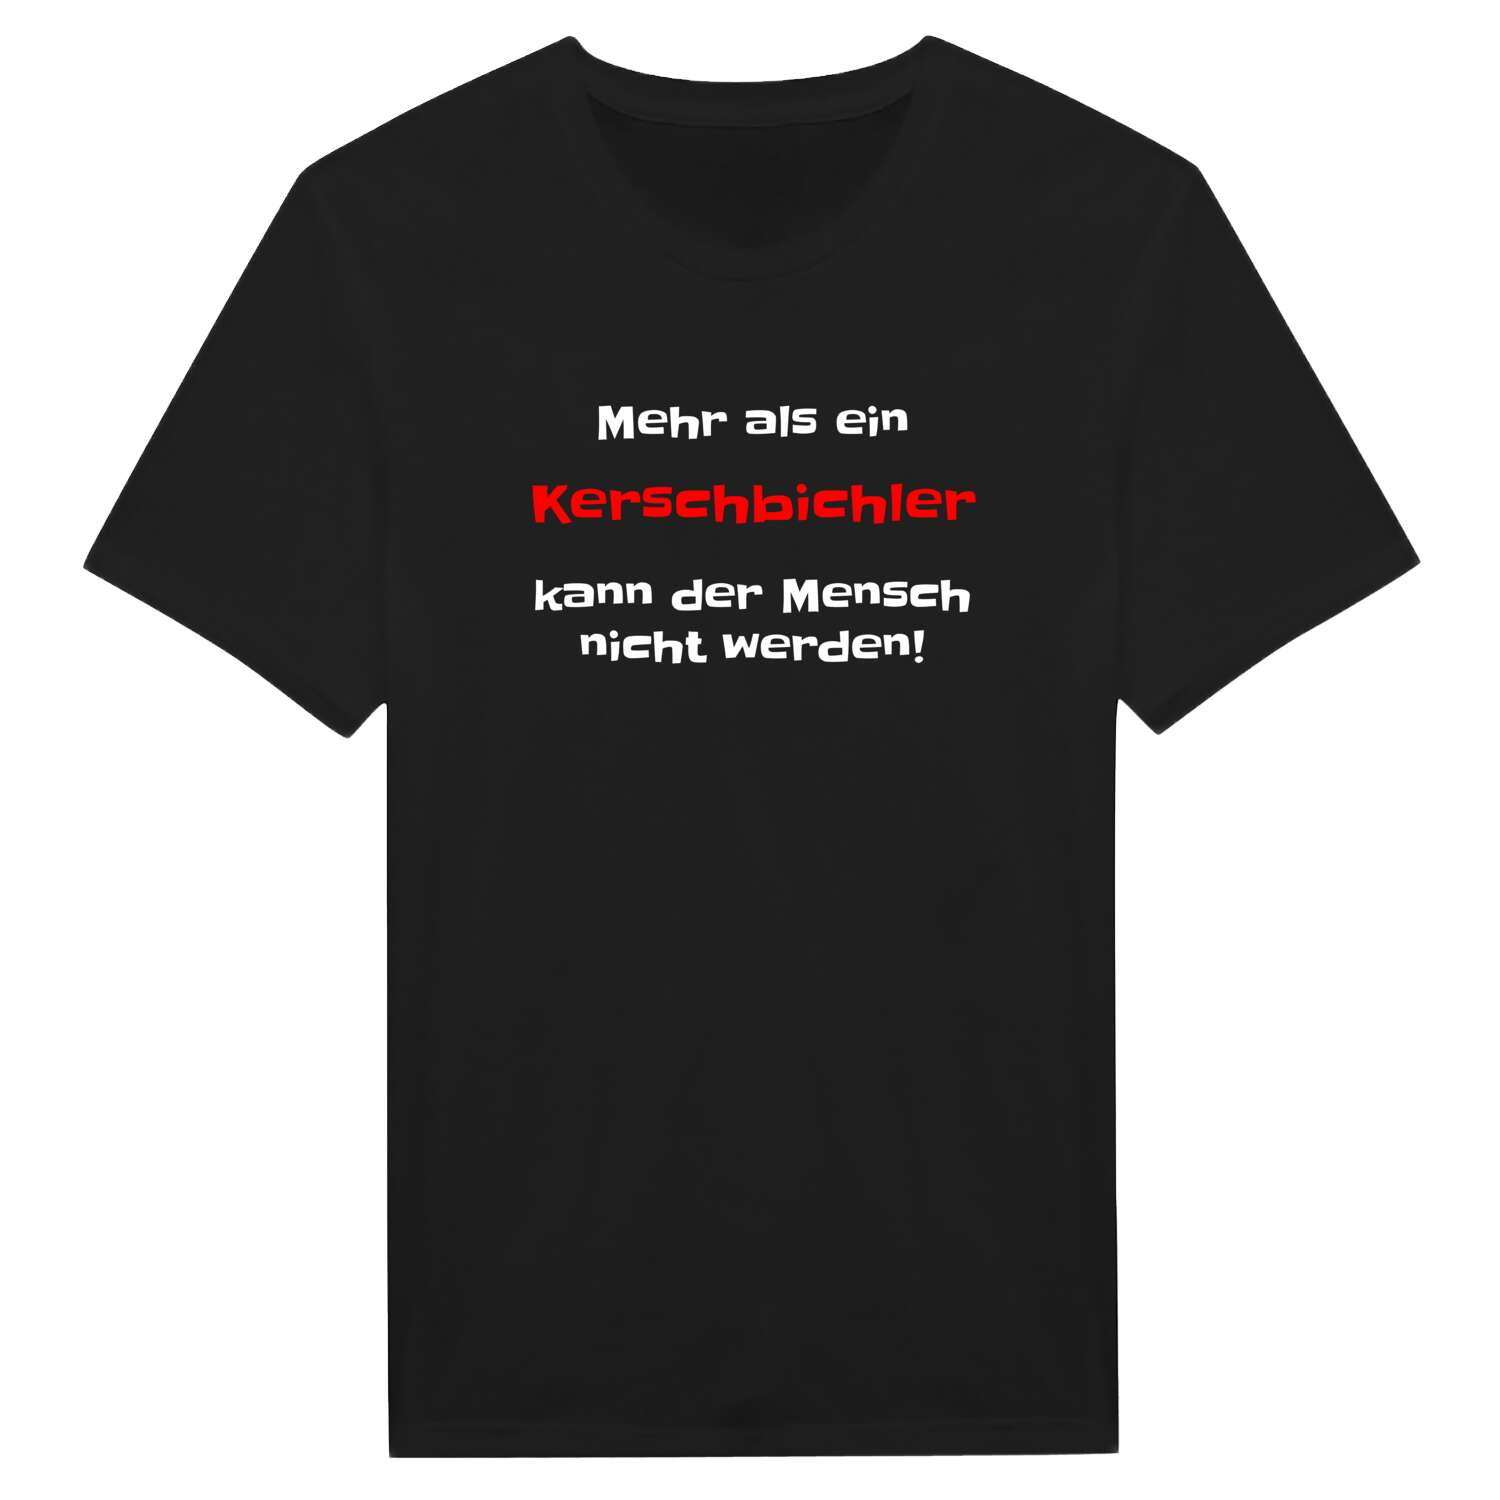 Kerschbichl T-Shirt »Mehr als ein«